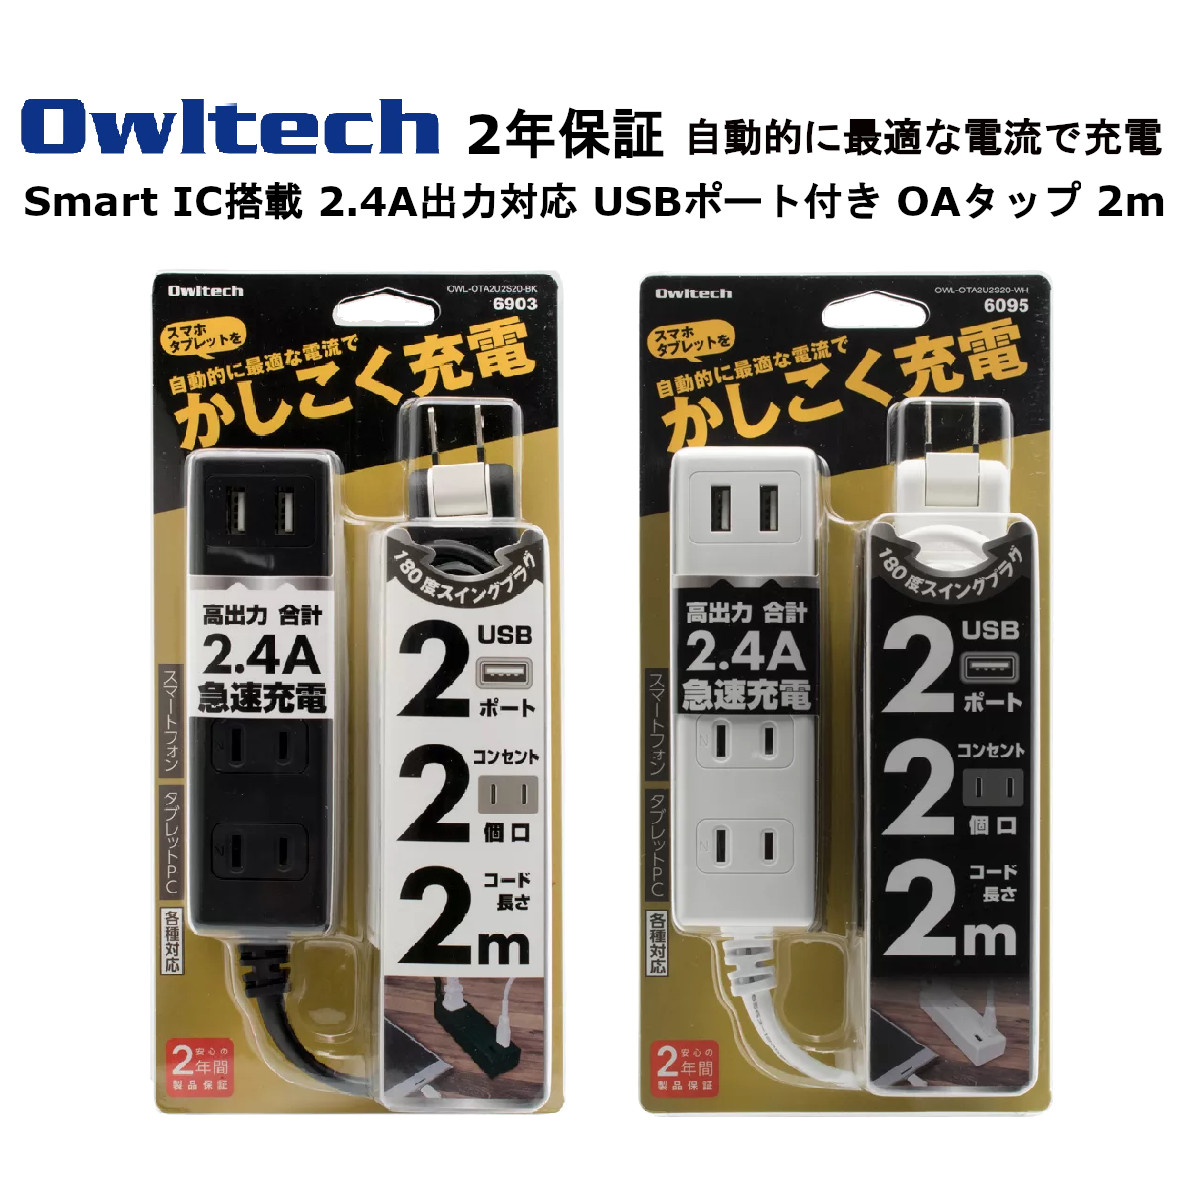 オウルテック USBポート付き OAタップ 製造メーカー2年保証 コード 2m 電源タップ 充電器 タップ 急速充電 2.4A出力対応 スマートフォン スマホ タブレット